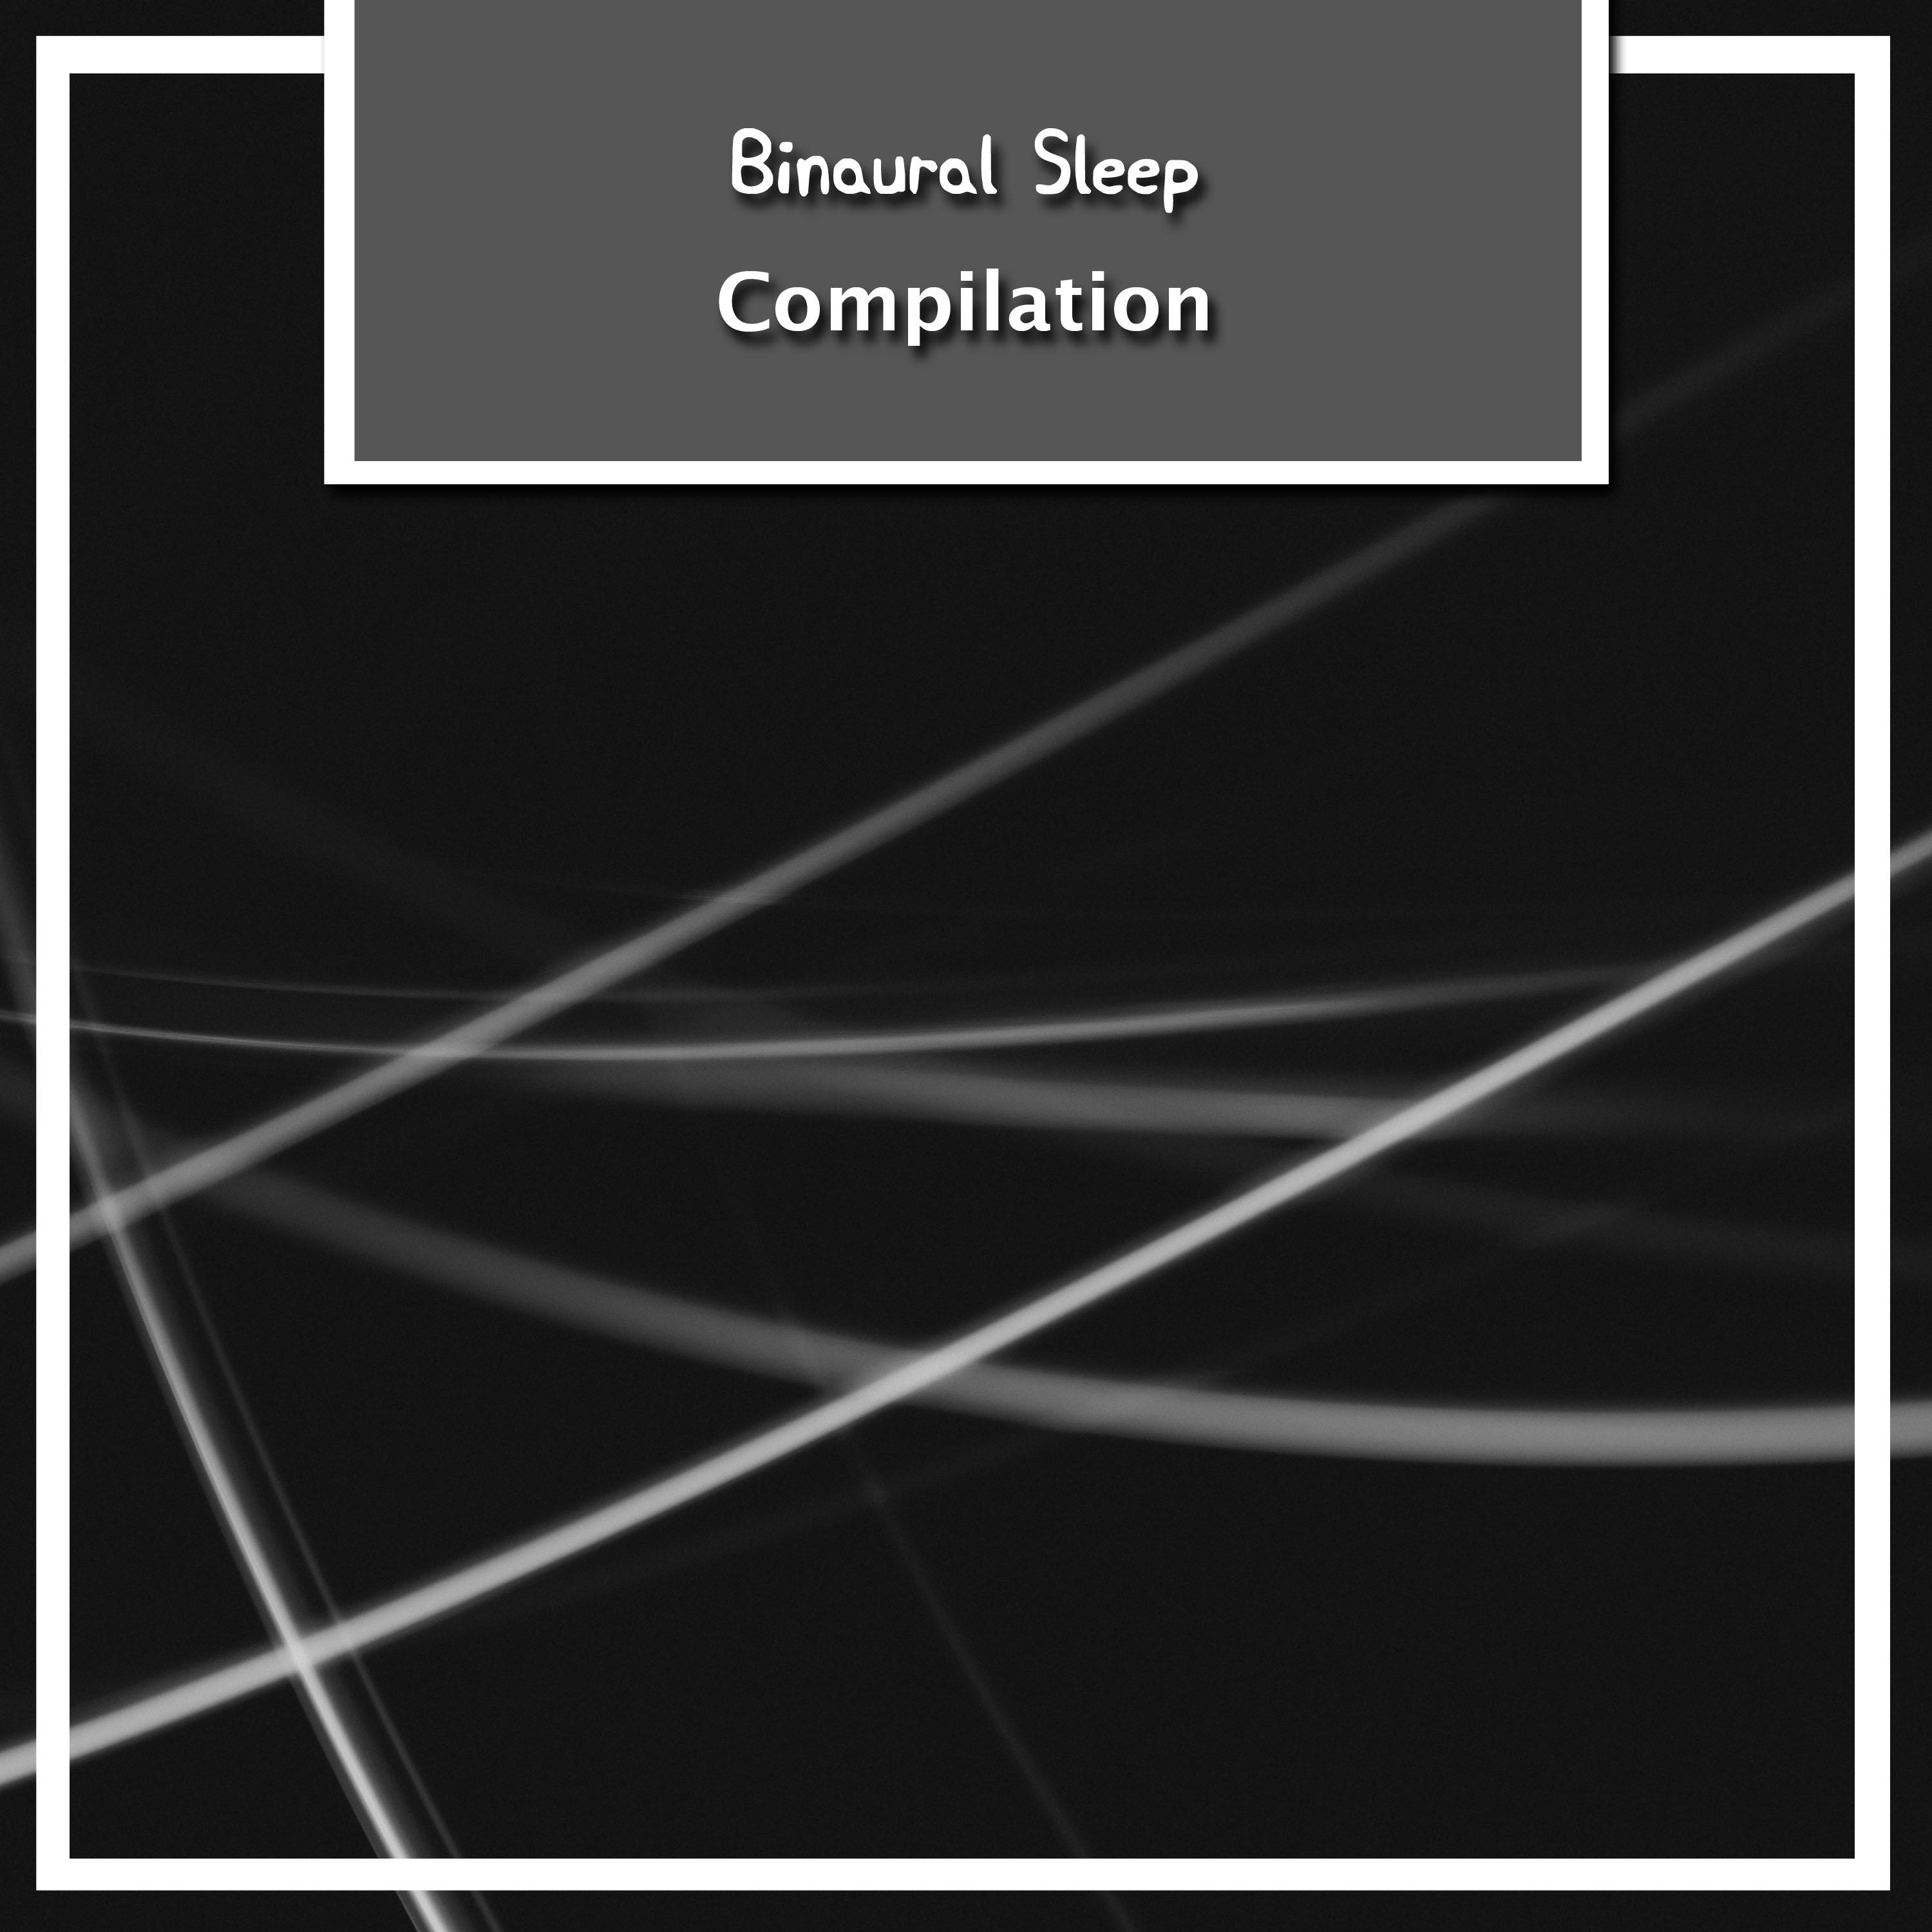 2018 A Binaural Sleep Compilation